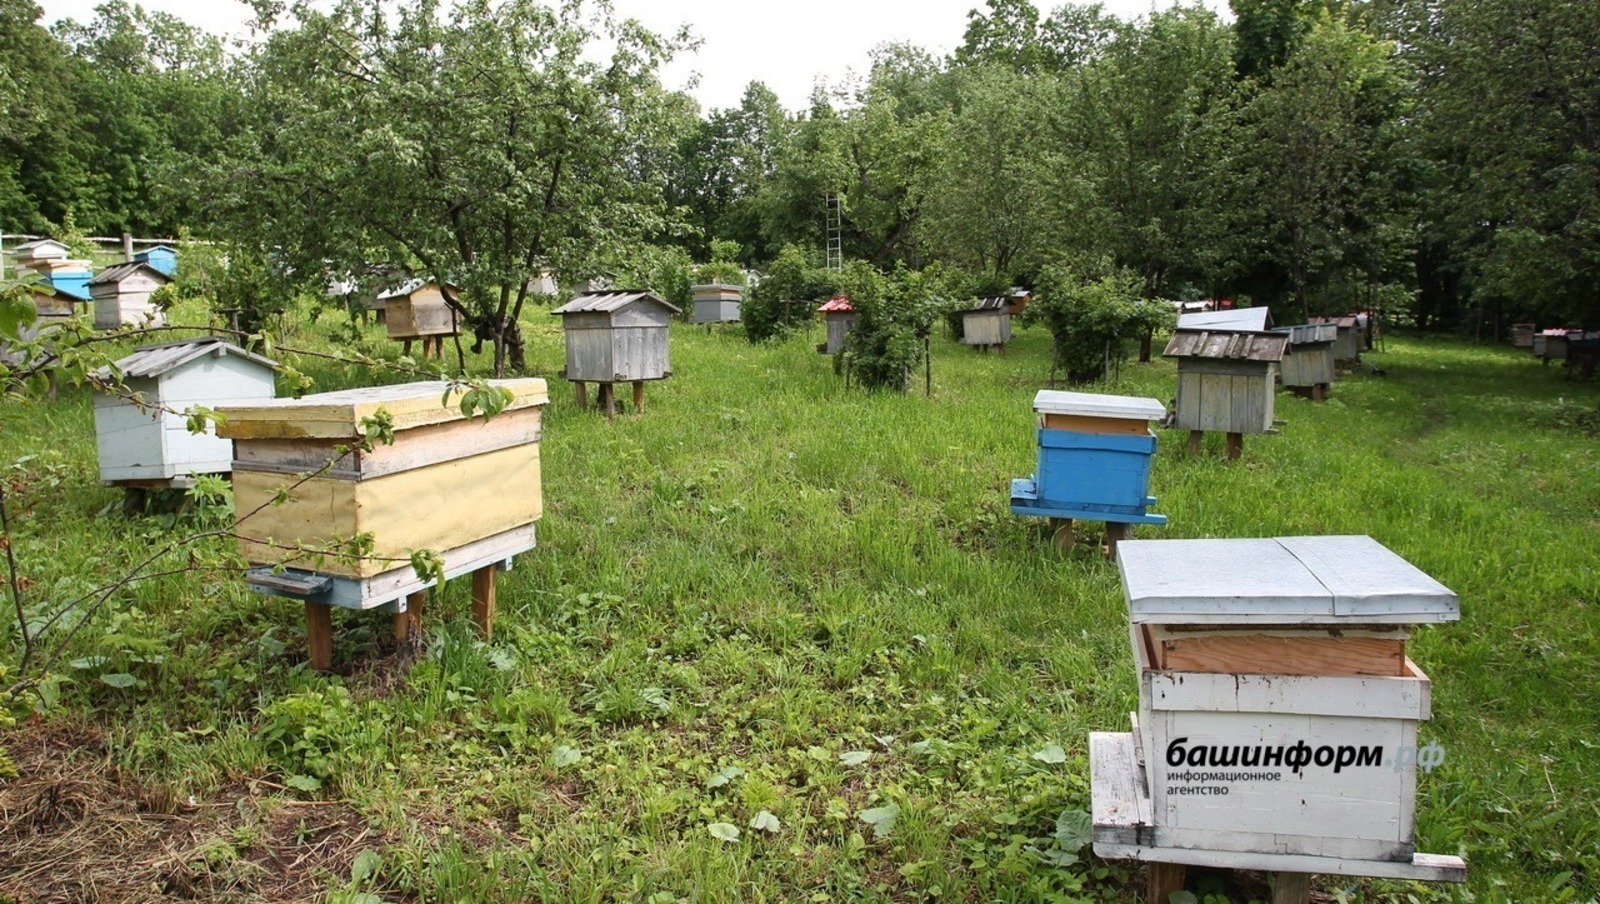 Виновные в массовой гибели пчёл в Башкирии найдены и им сделано предупреждение